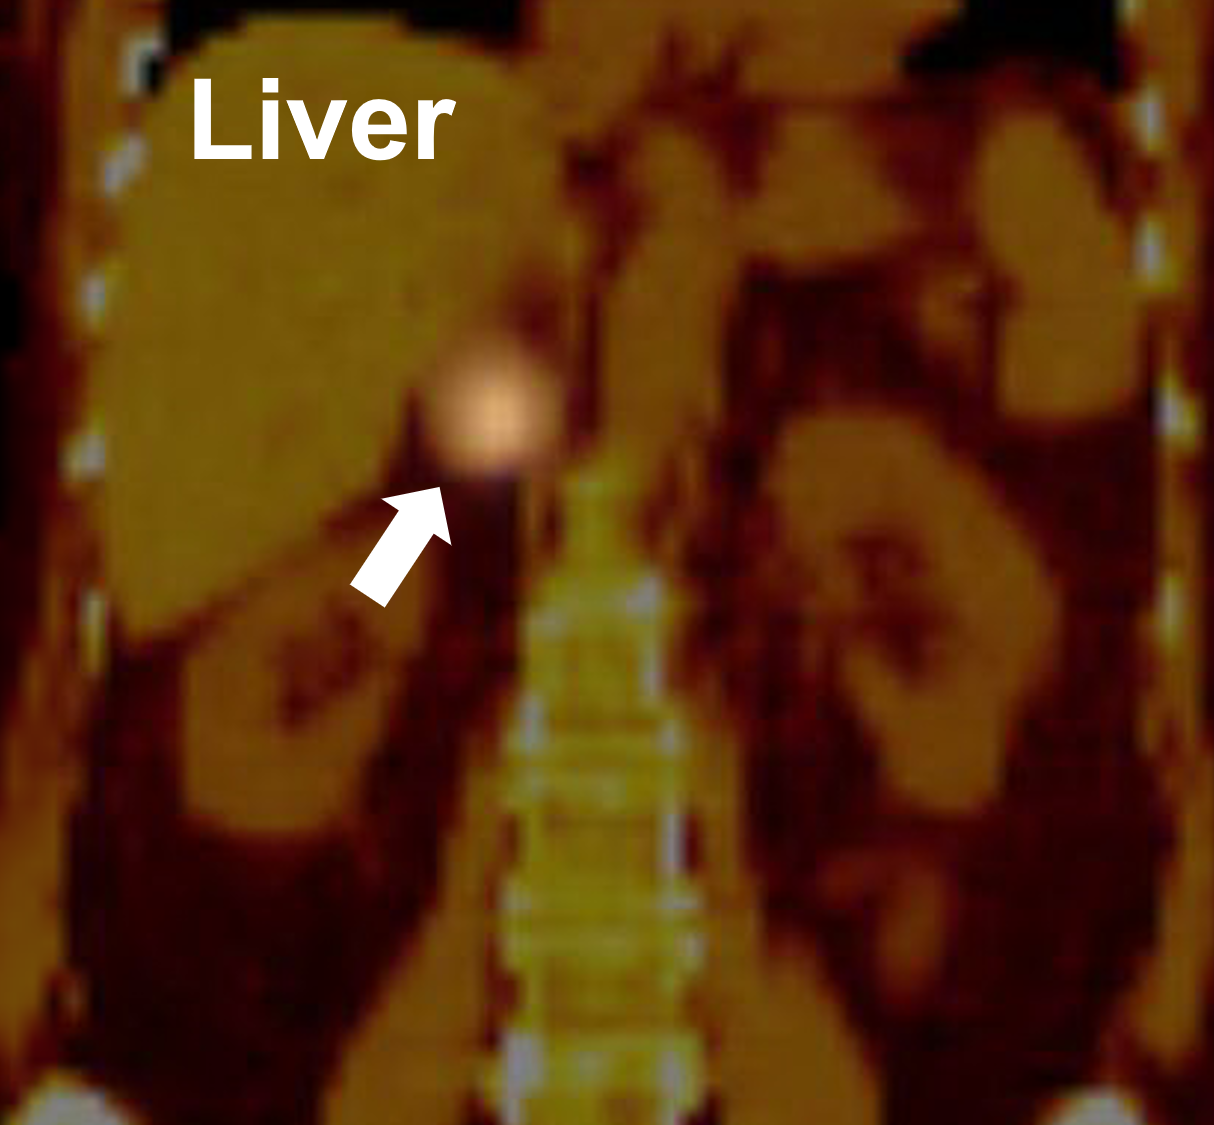 Una gammagrafía con MIBG que demuestra una captación positiva en la glándula suprarrenal derecha (flecha) que demuestra ser un feocromocitoma.